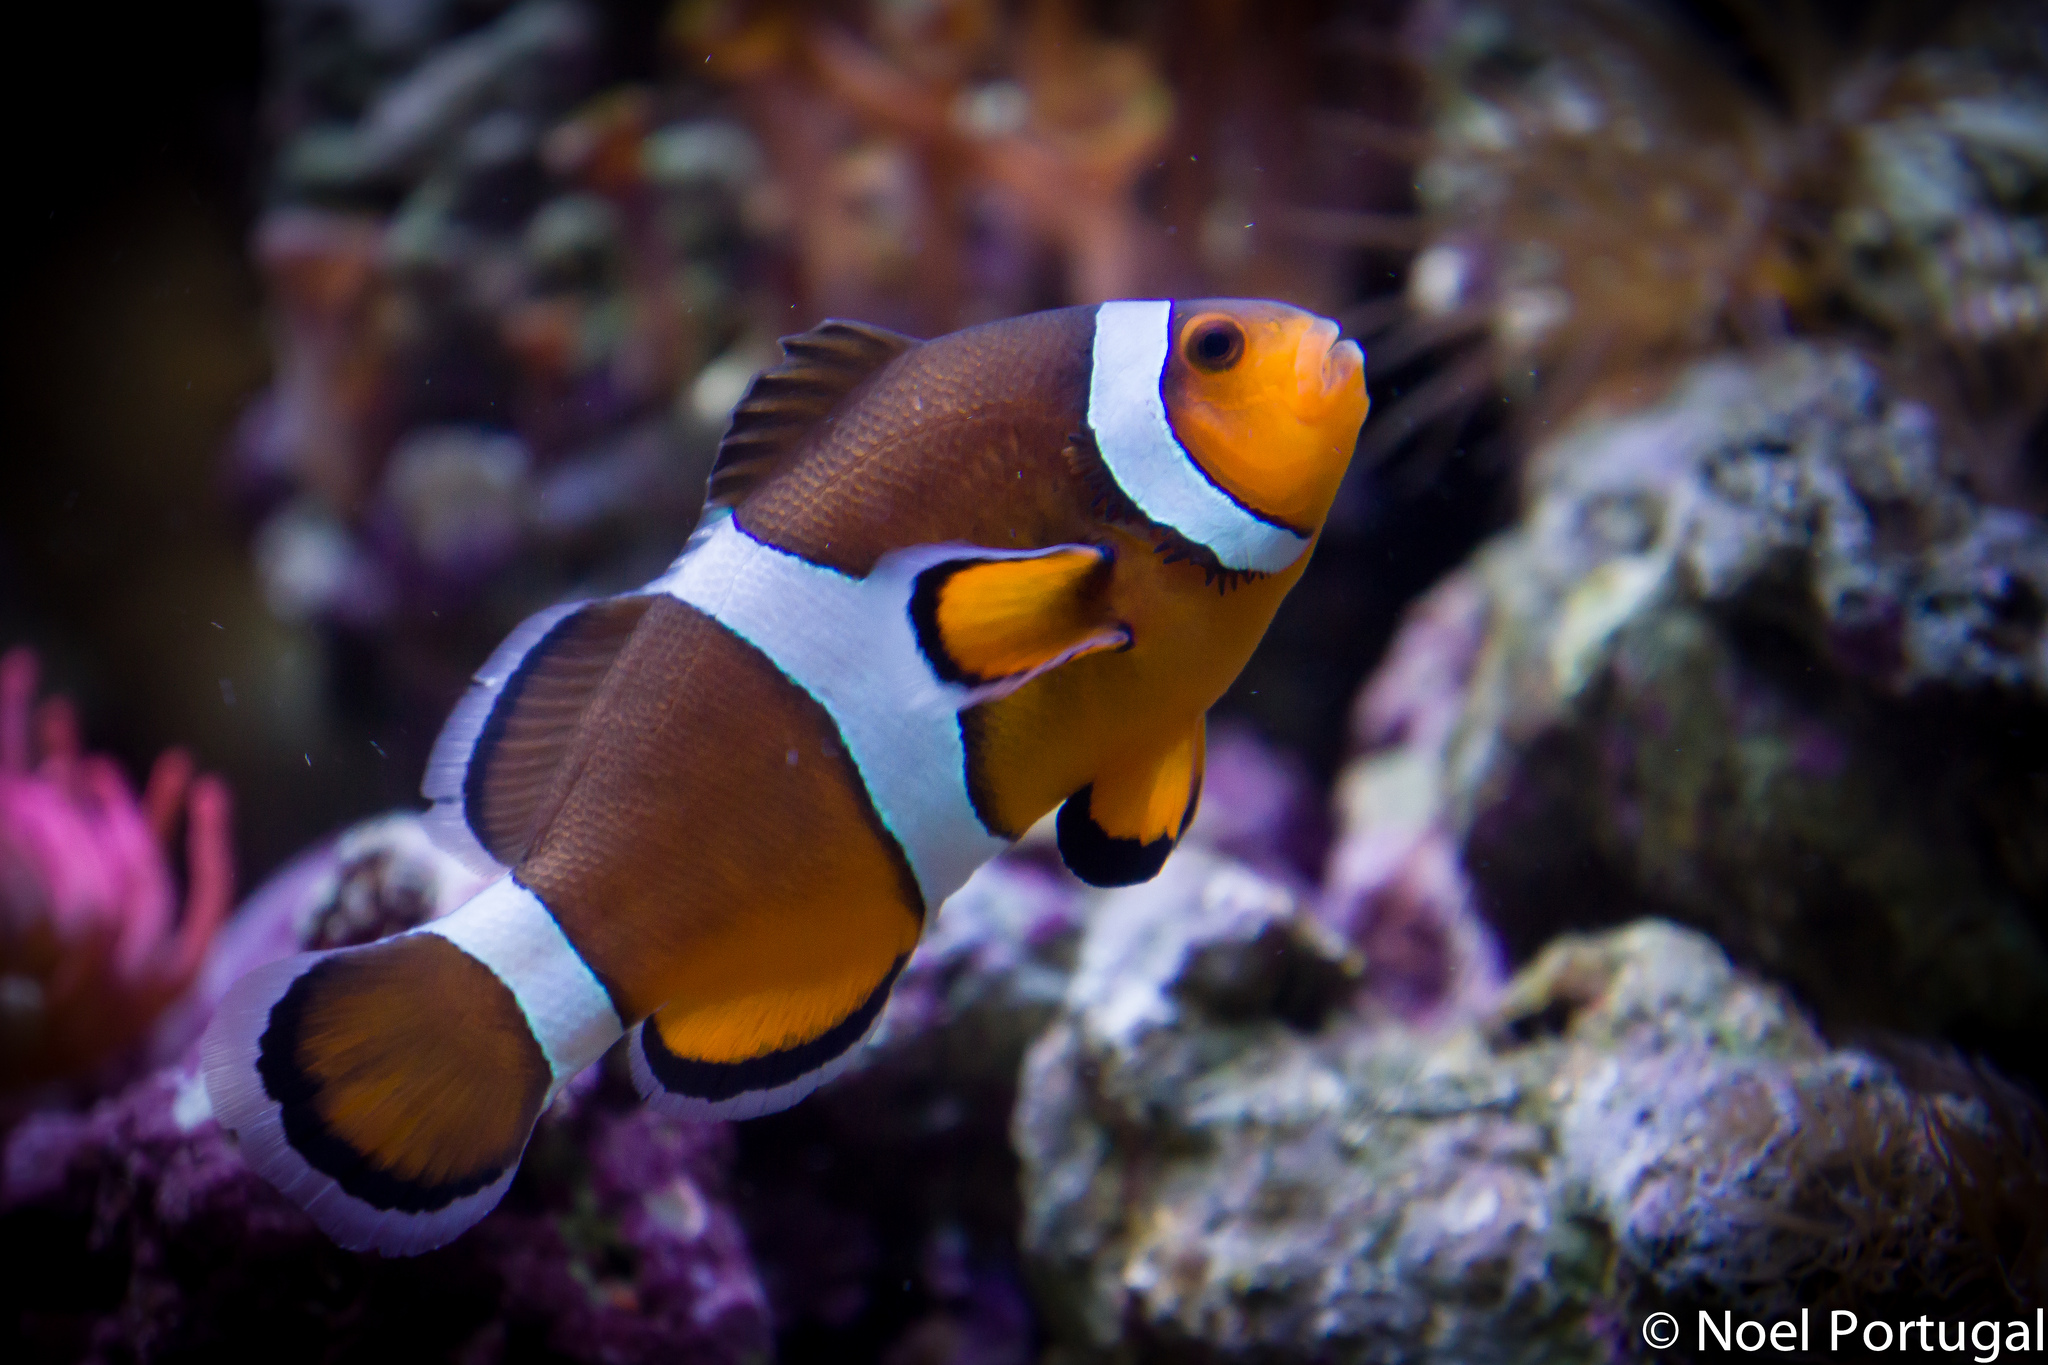 On a retrouvé Nemo ! Crédit photo @Noel Portugal - Flickr